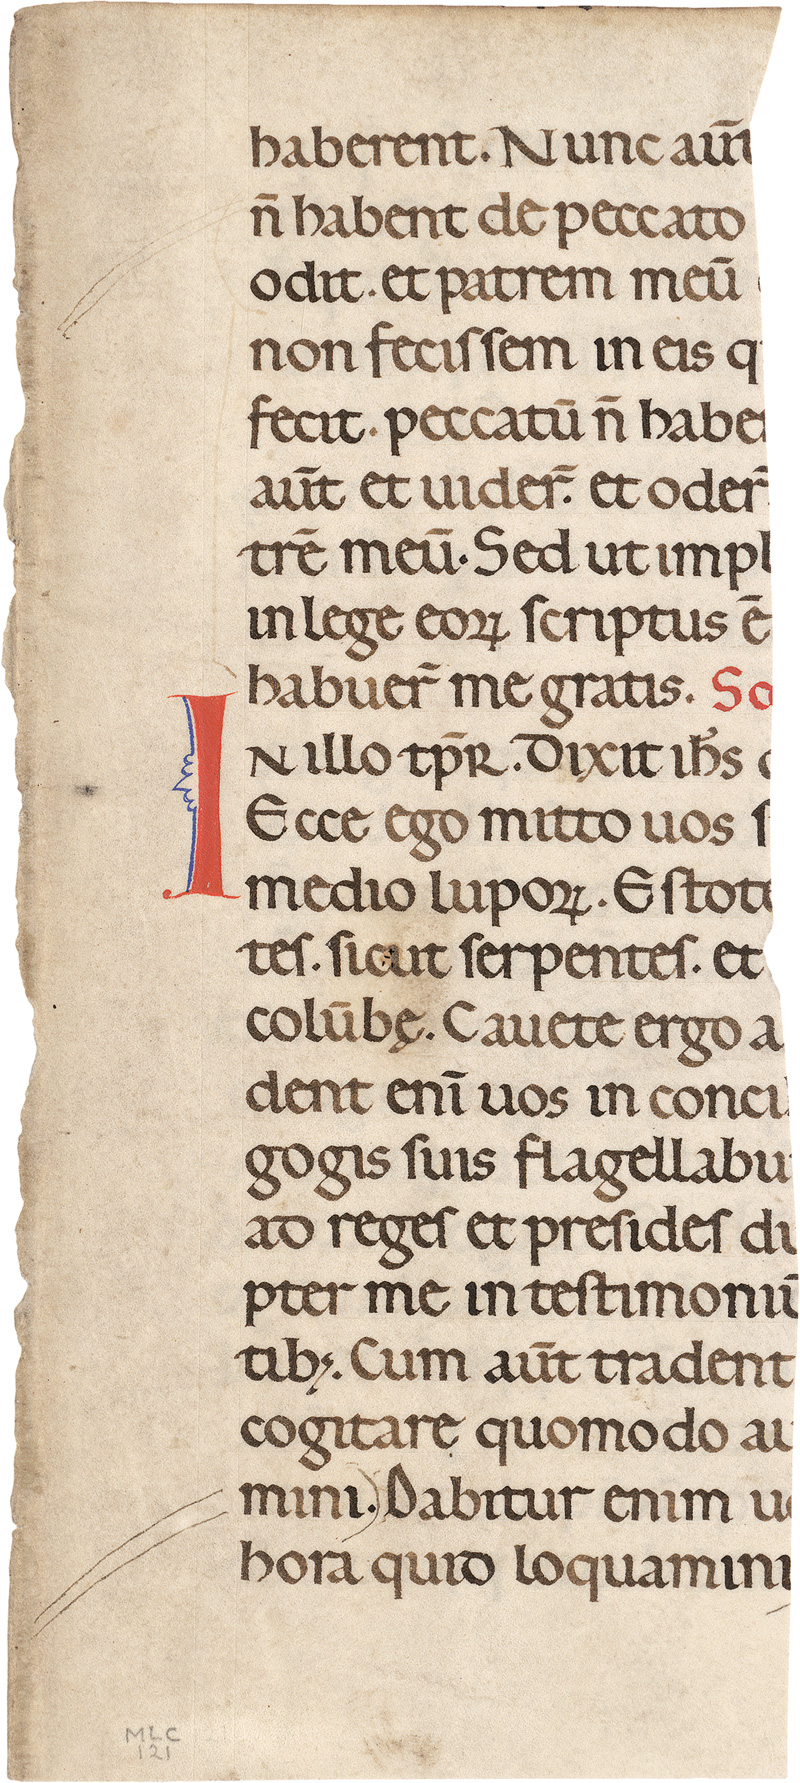 Lot 2816, Auction  123, Evangelienlektionar, Fragmentblatt einer lateinischen Handschrift auf Pergament